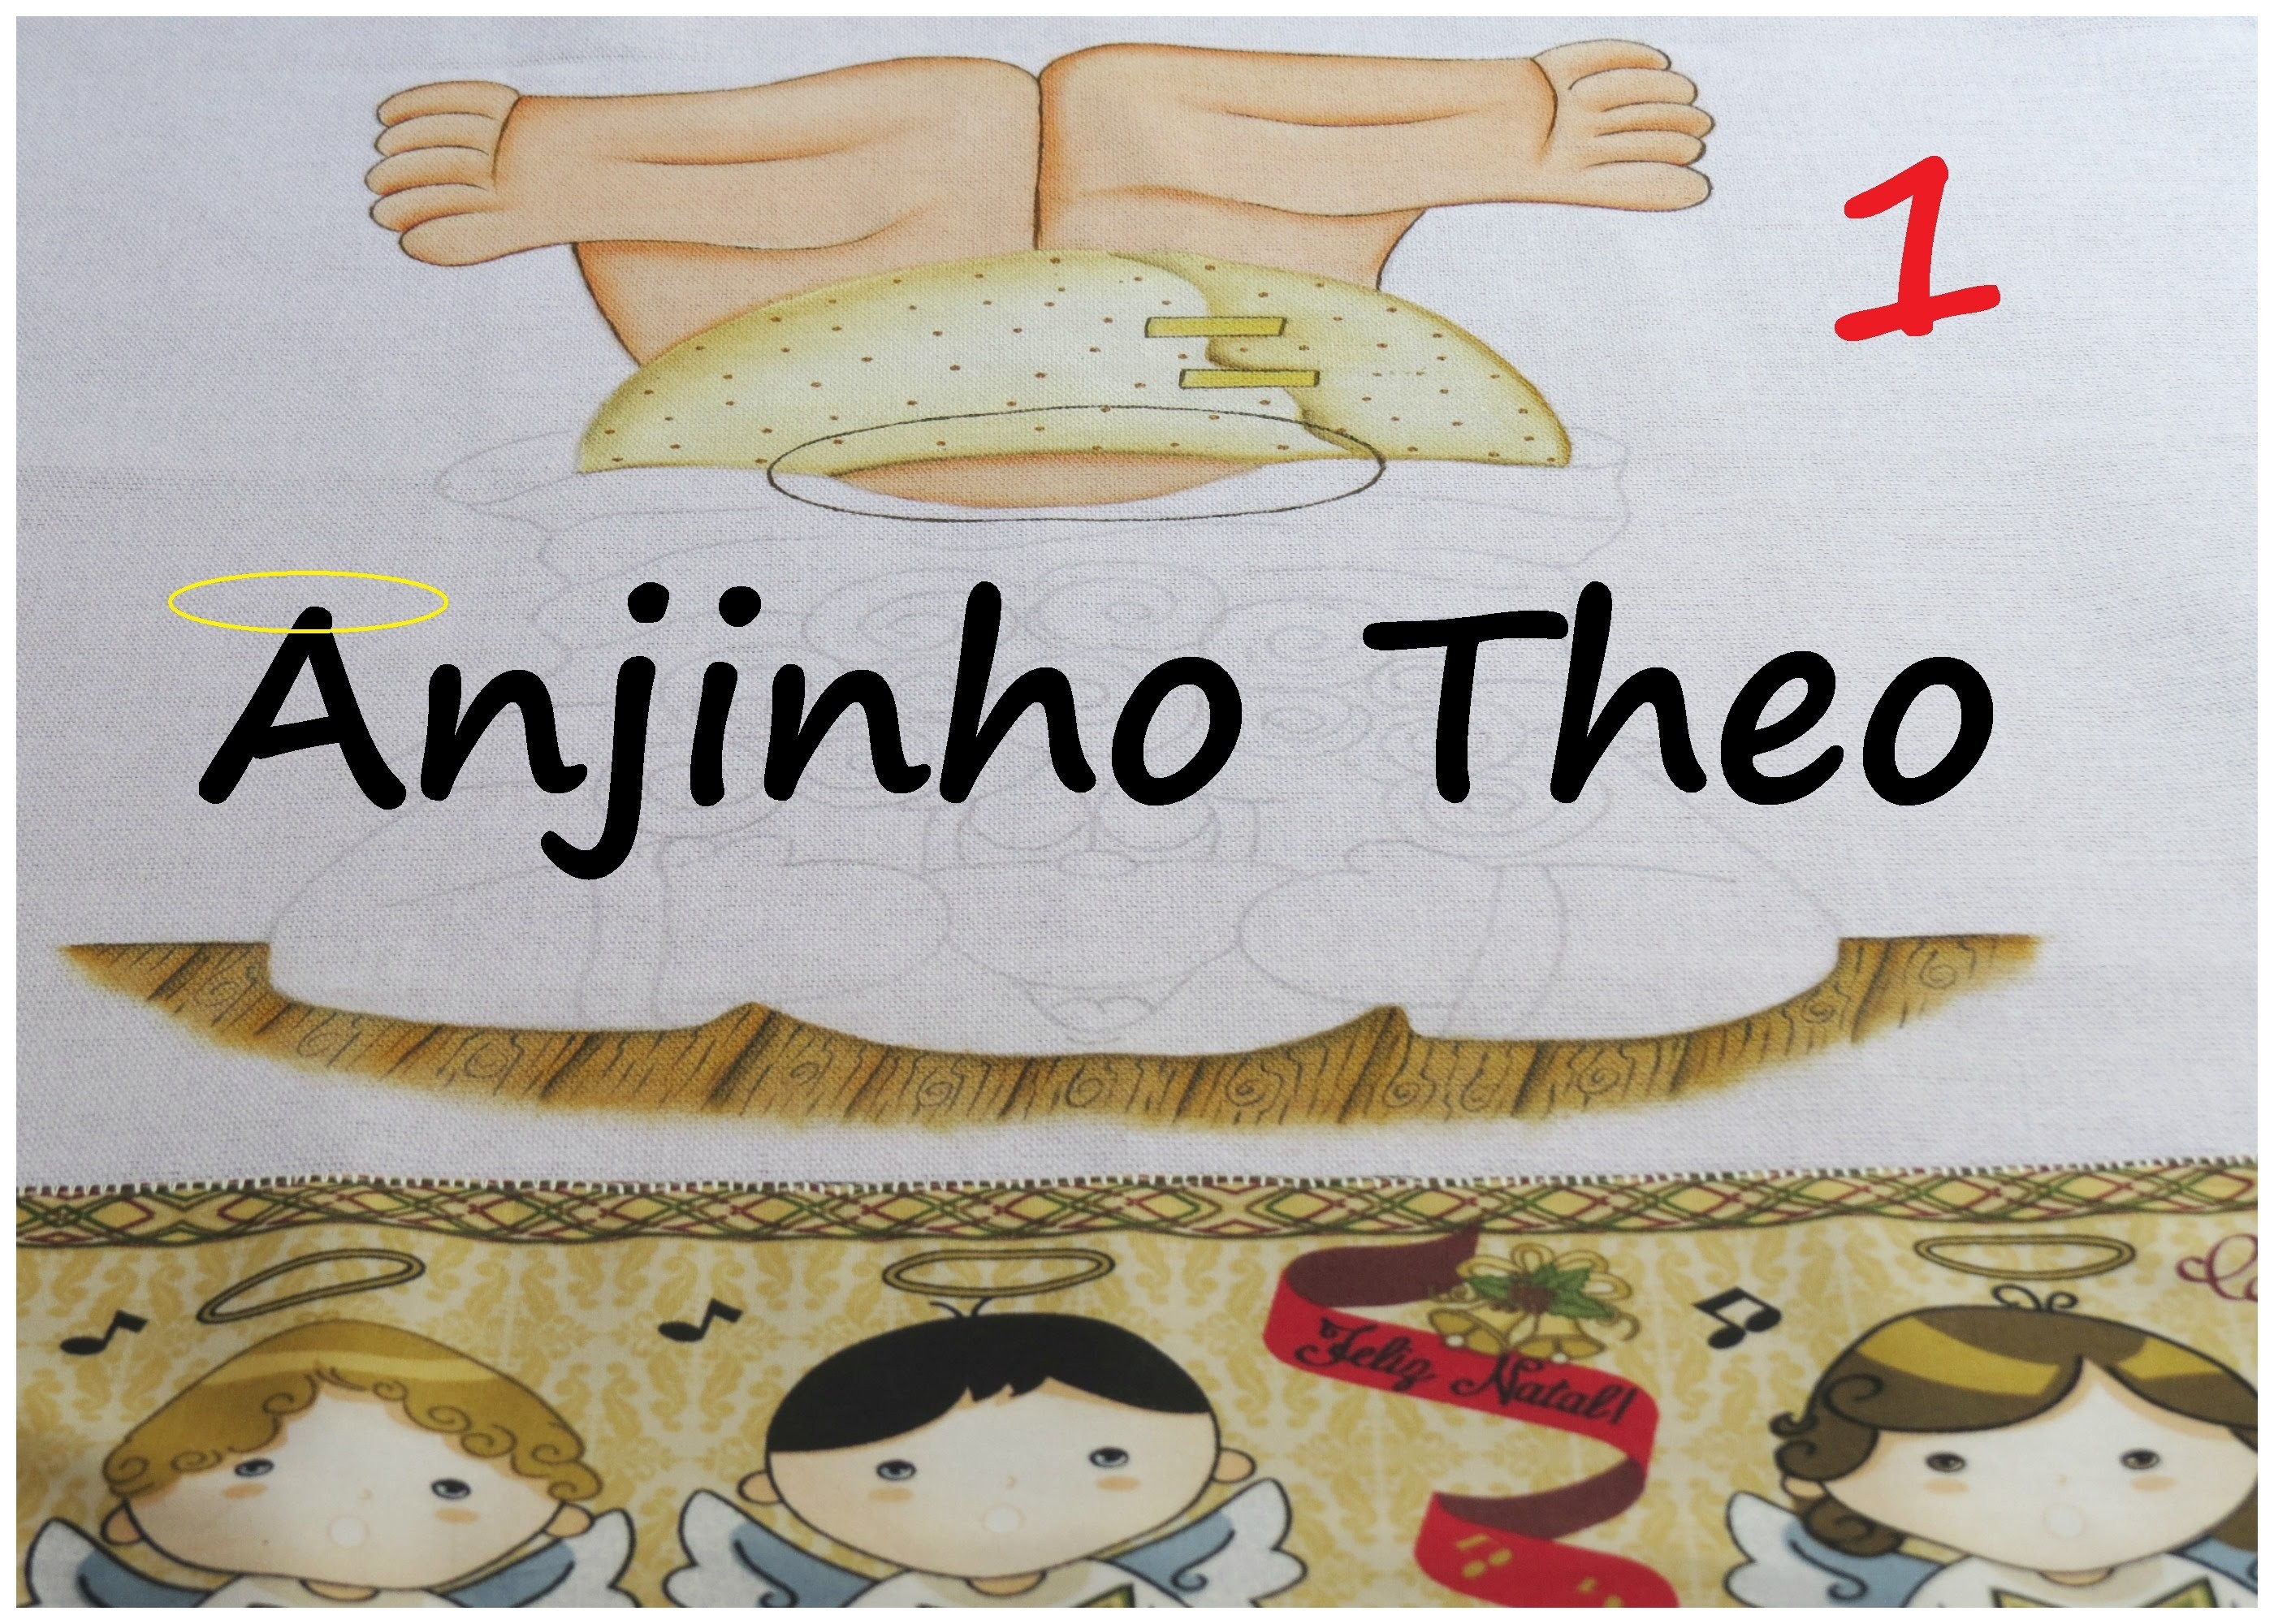 Pintando um Anjinho! projeto novo - ANJINHO THEO! parte 1